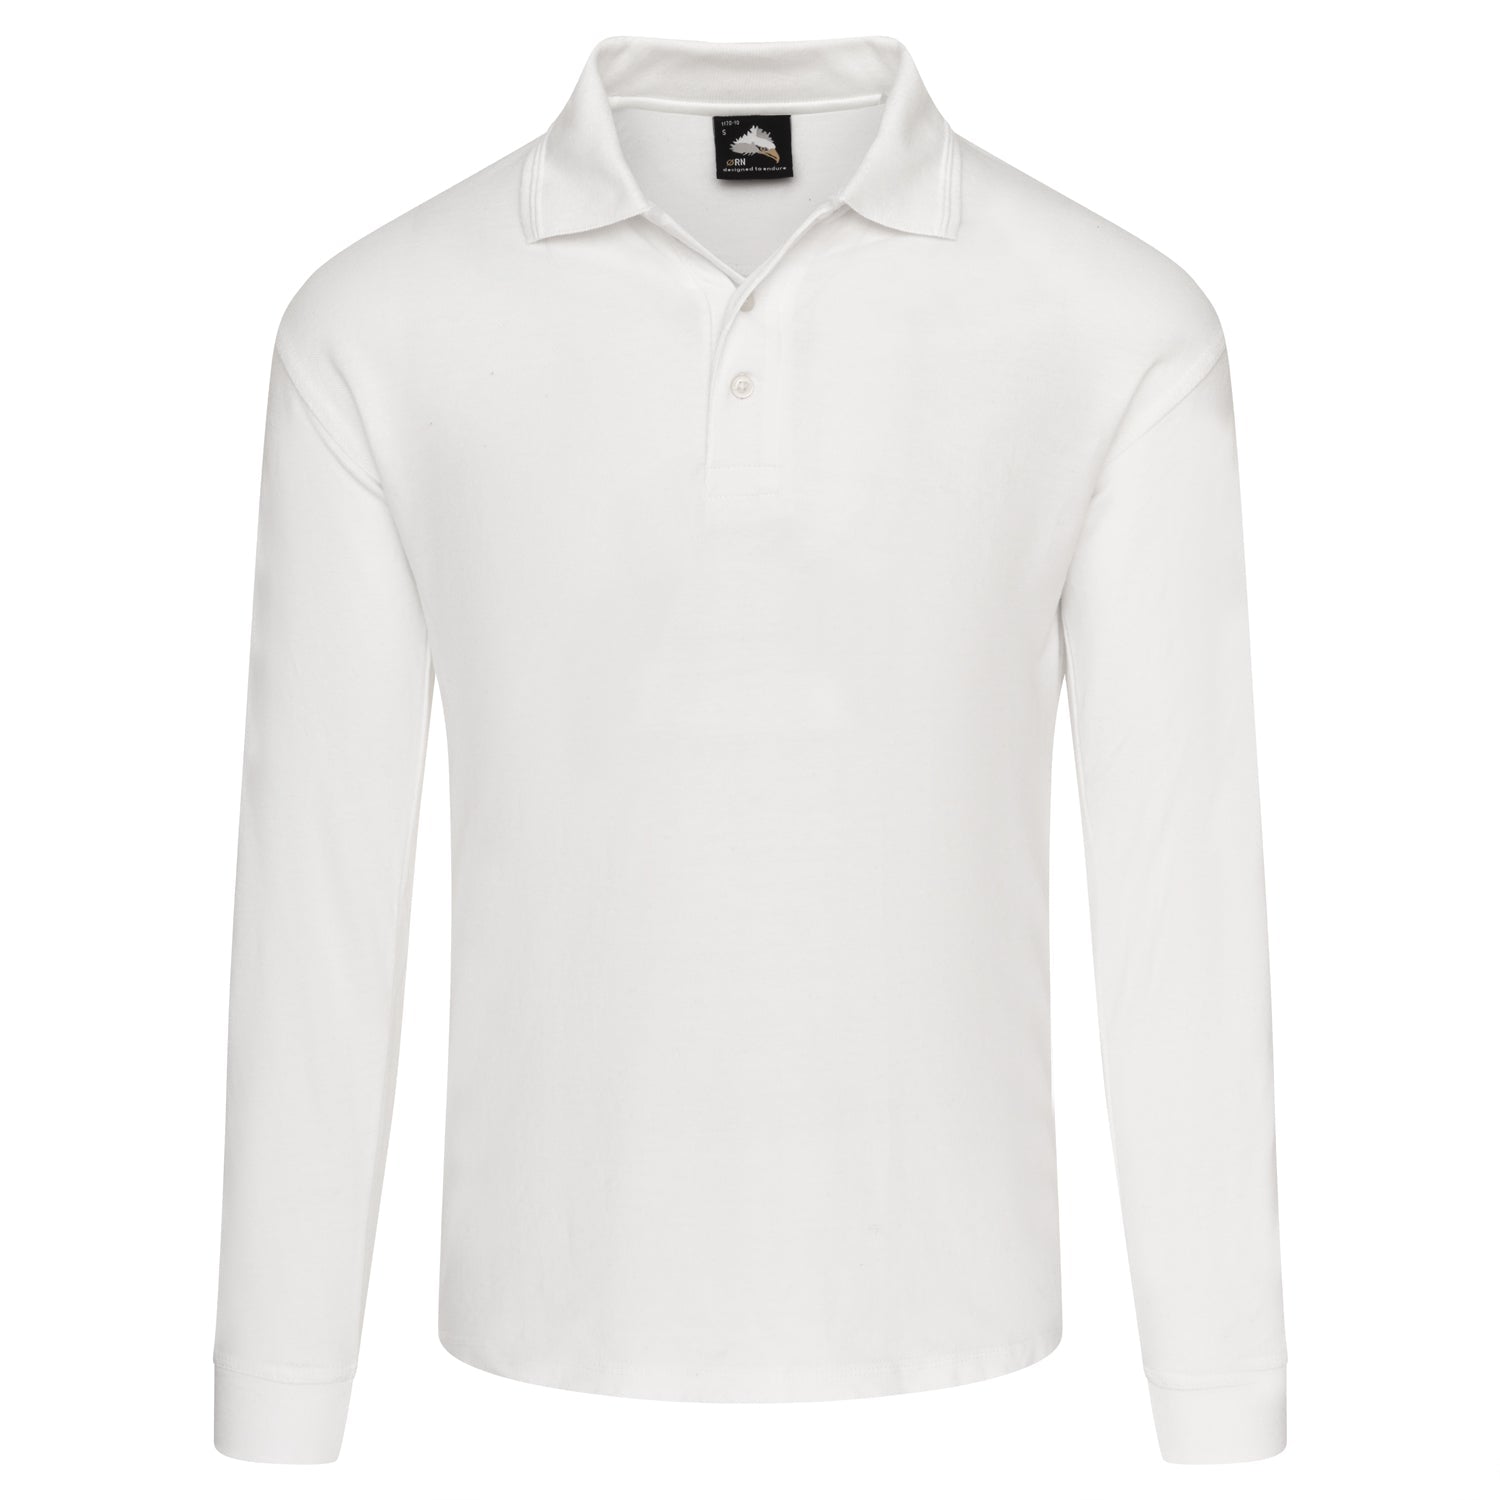 ORN Weaver Long Sleeved Poloshirt - White